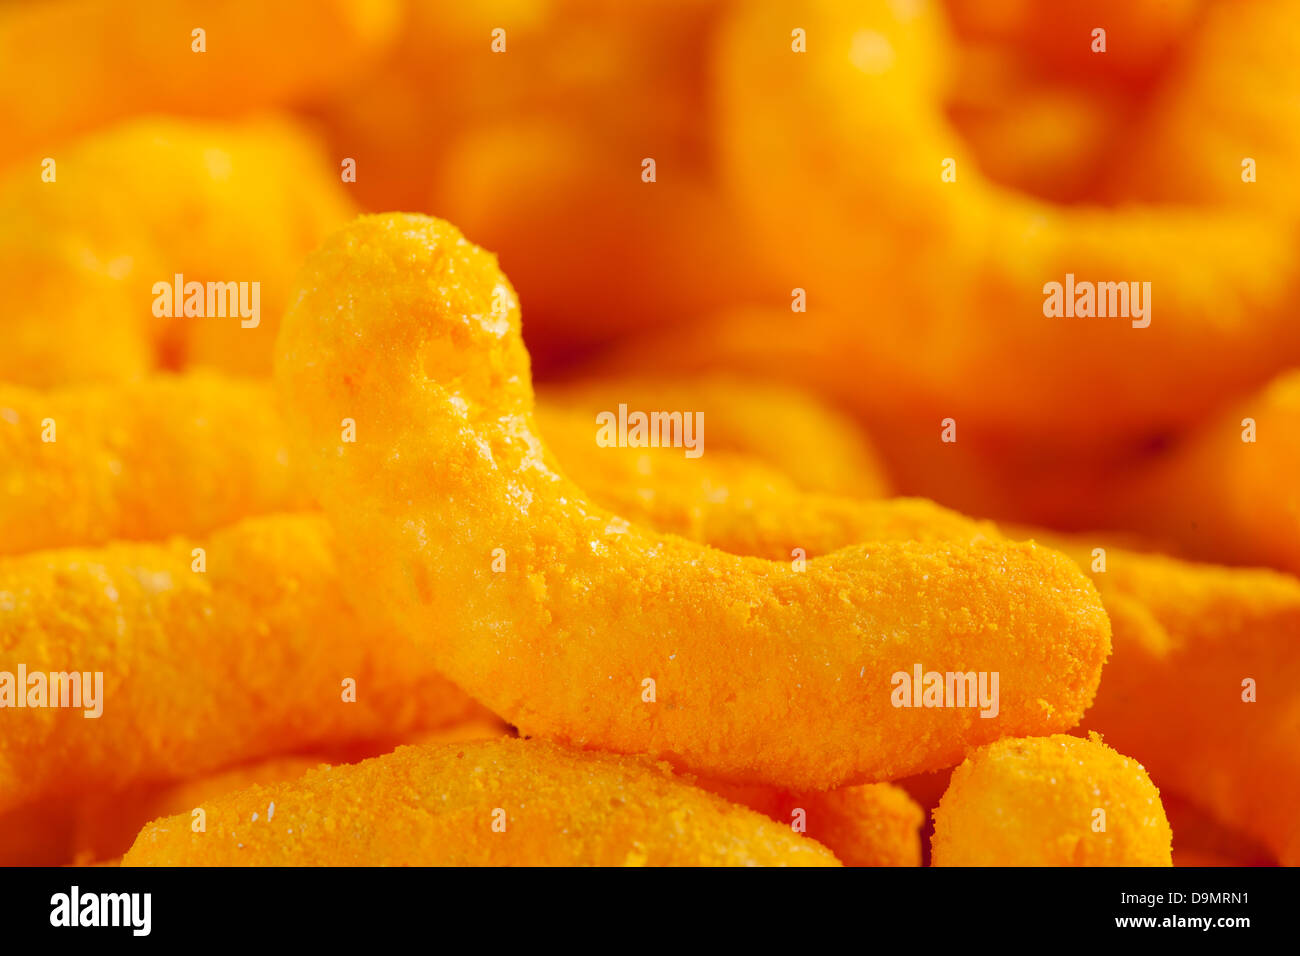 Chips Fromage Puffy Orange malsaine contre un arrière-plan Banque D'Images